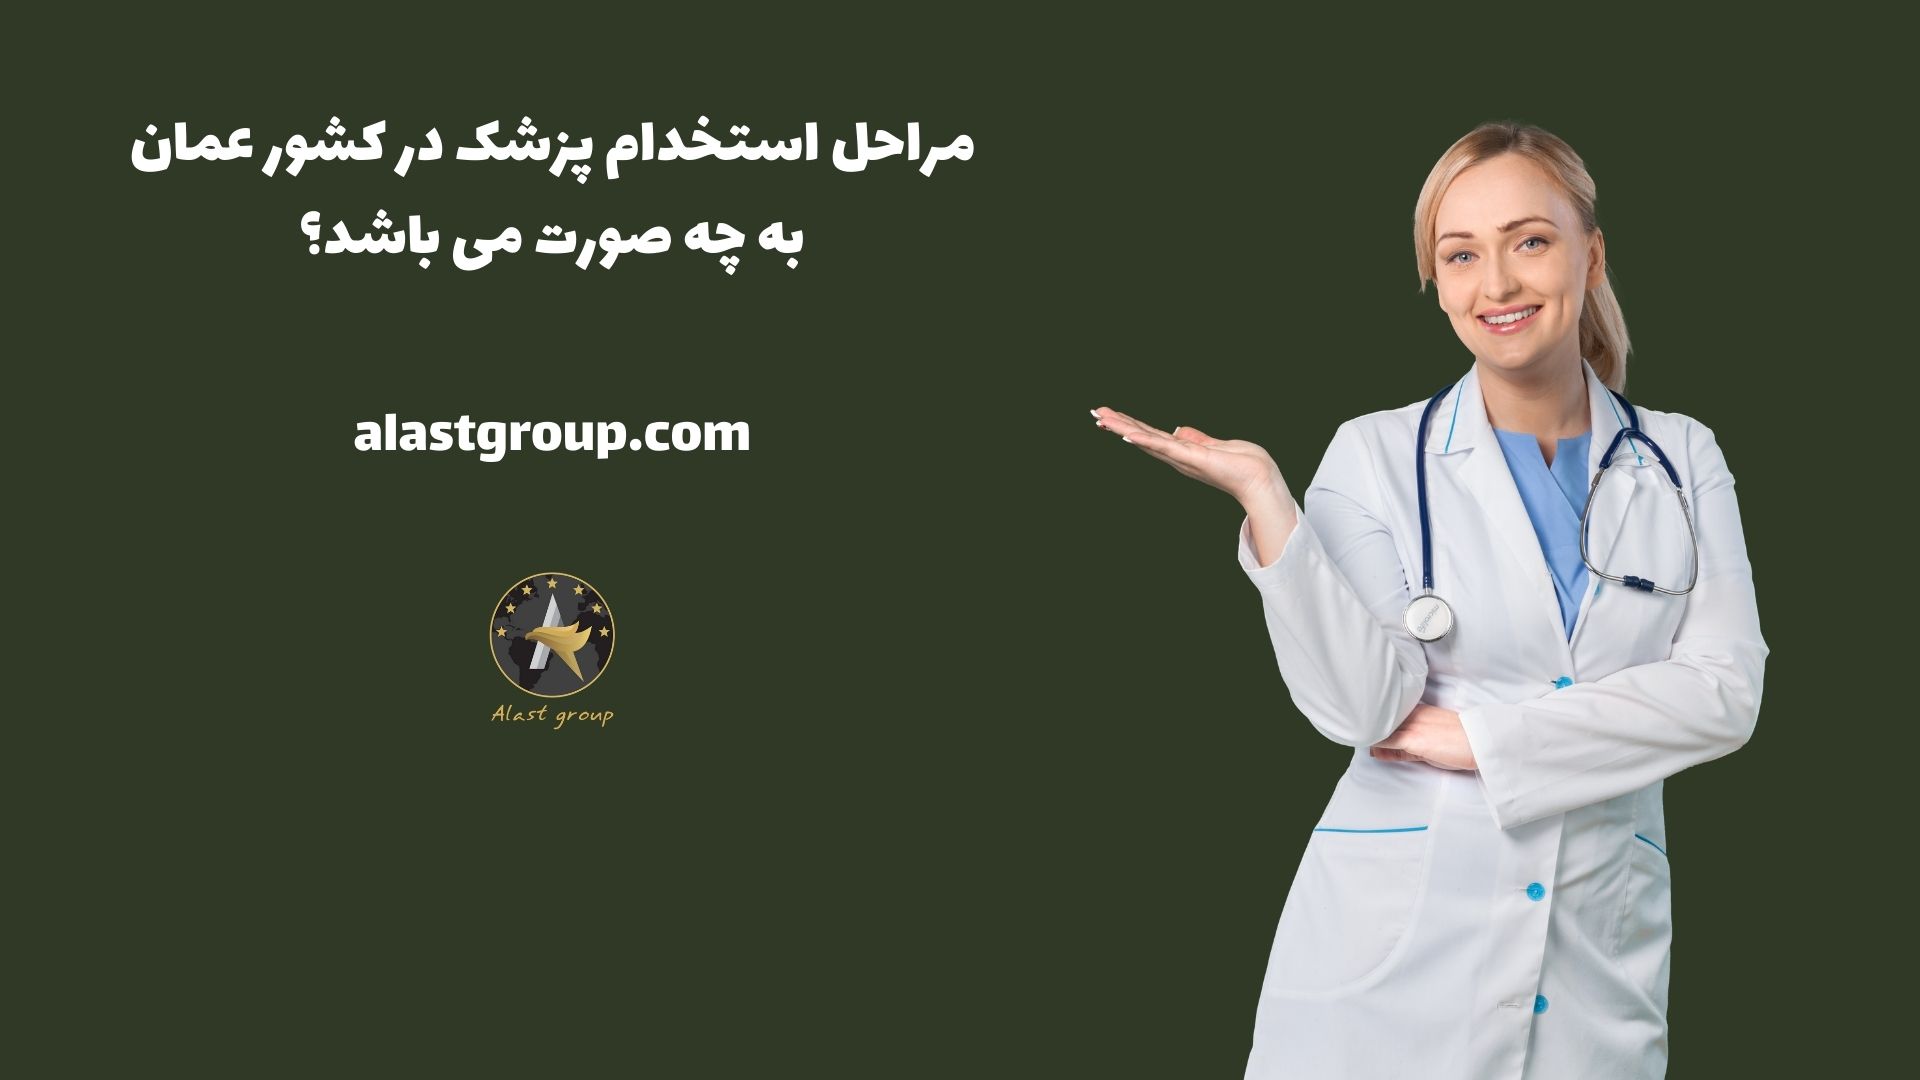 مراحل استخدام پزشک در کشور عمان به چه صورت می باشد؟